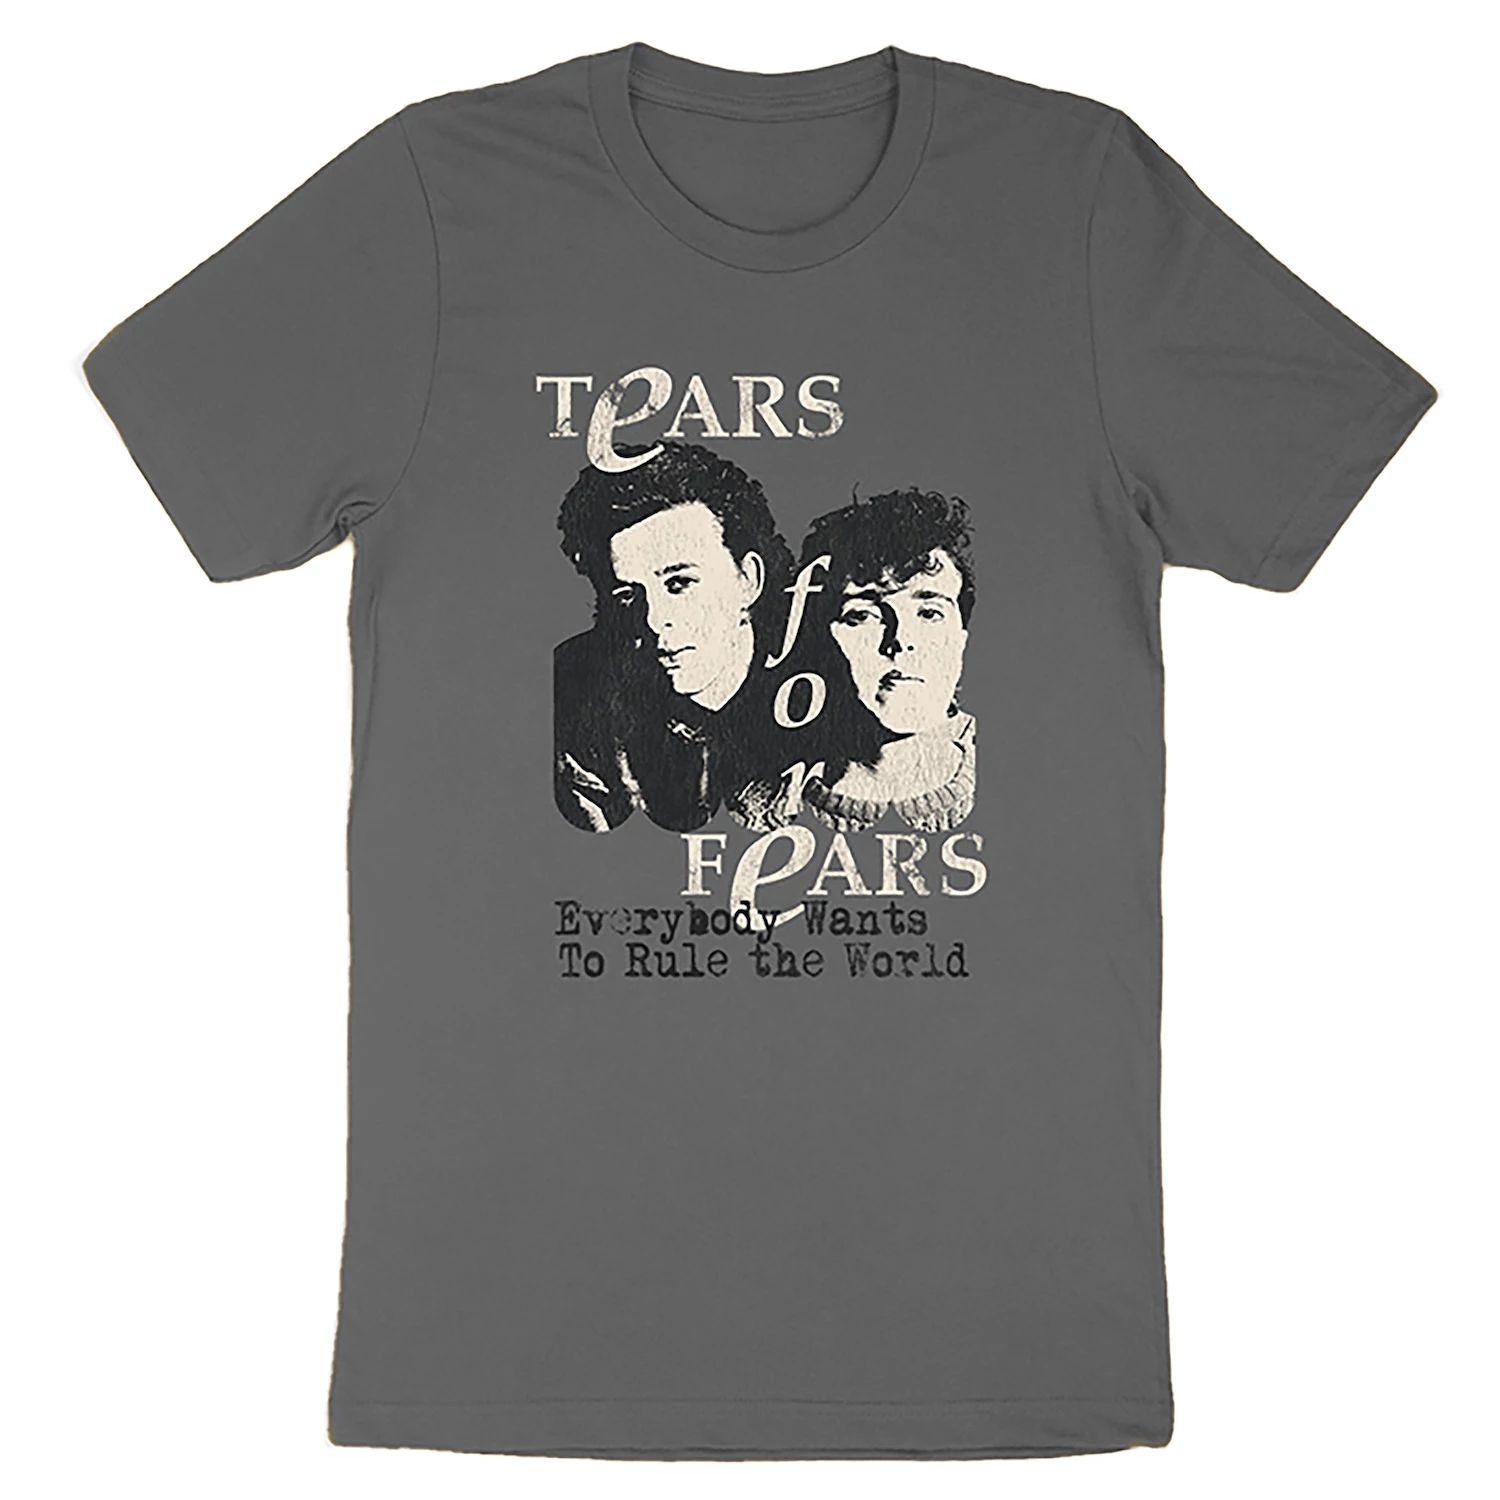 Мужская футболка Tears For Fears Rule The World Licensed Character tears for fears виниловая пластинка tears for fears rule the world